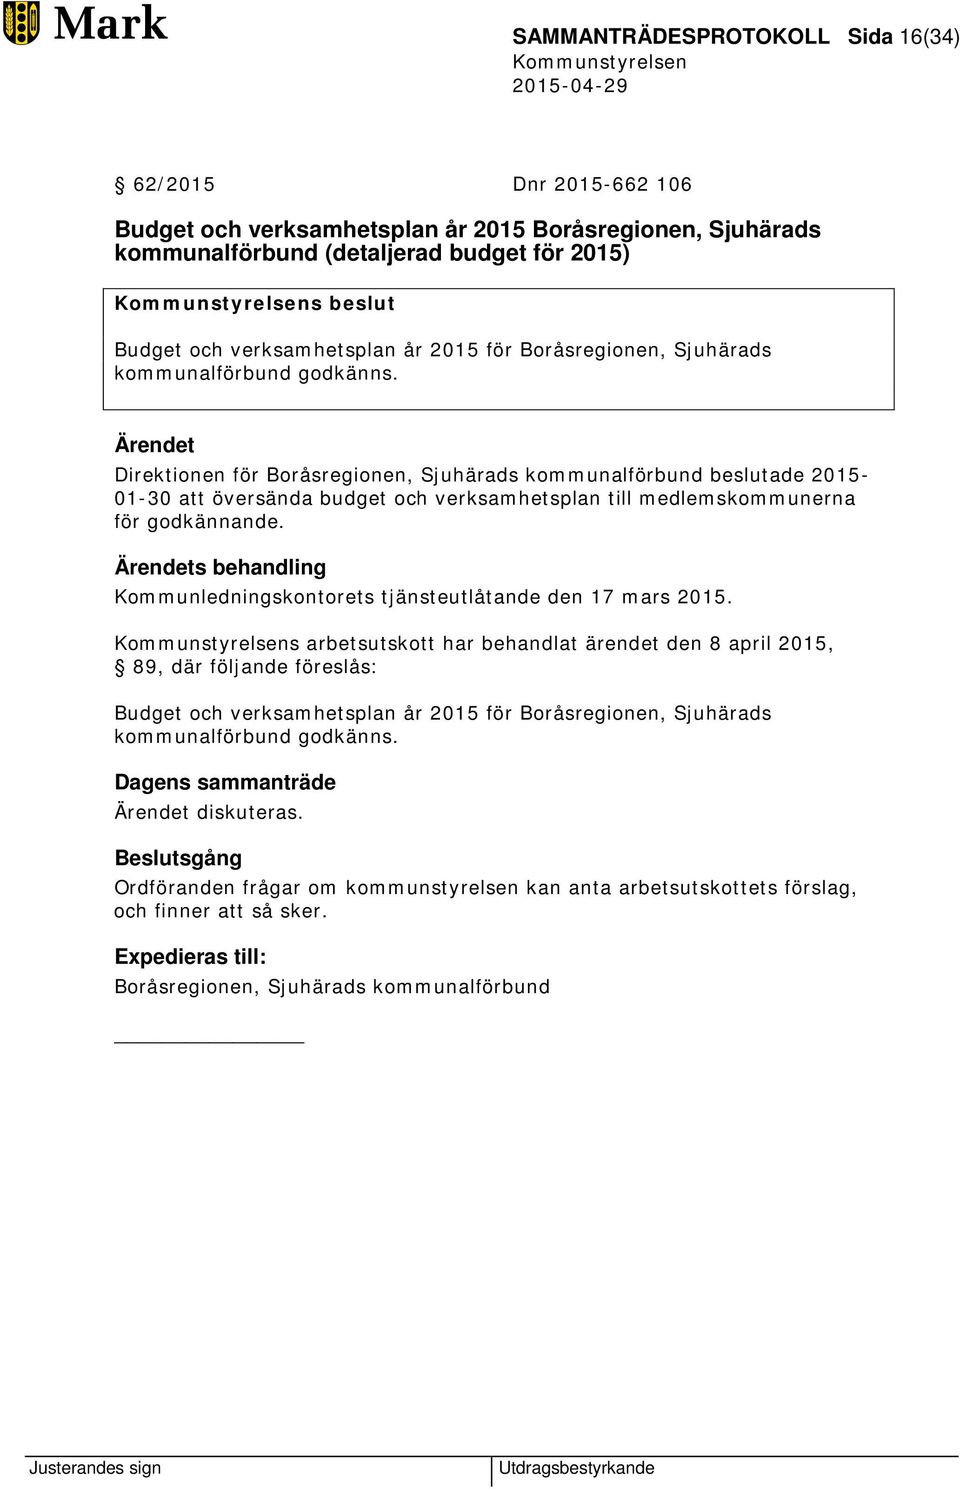 Ärendet Direktionen för Boråsregionen, Sjuhärads kommunalförbund beslutade 2015-01-30 att översända budget och verksamhetsplan till medlemskommunerna för godkännande.